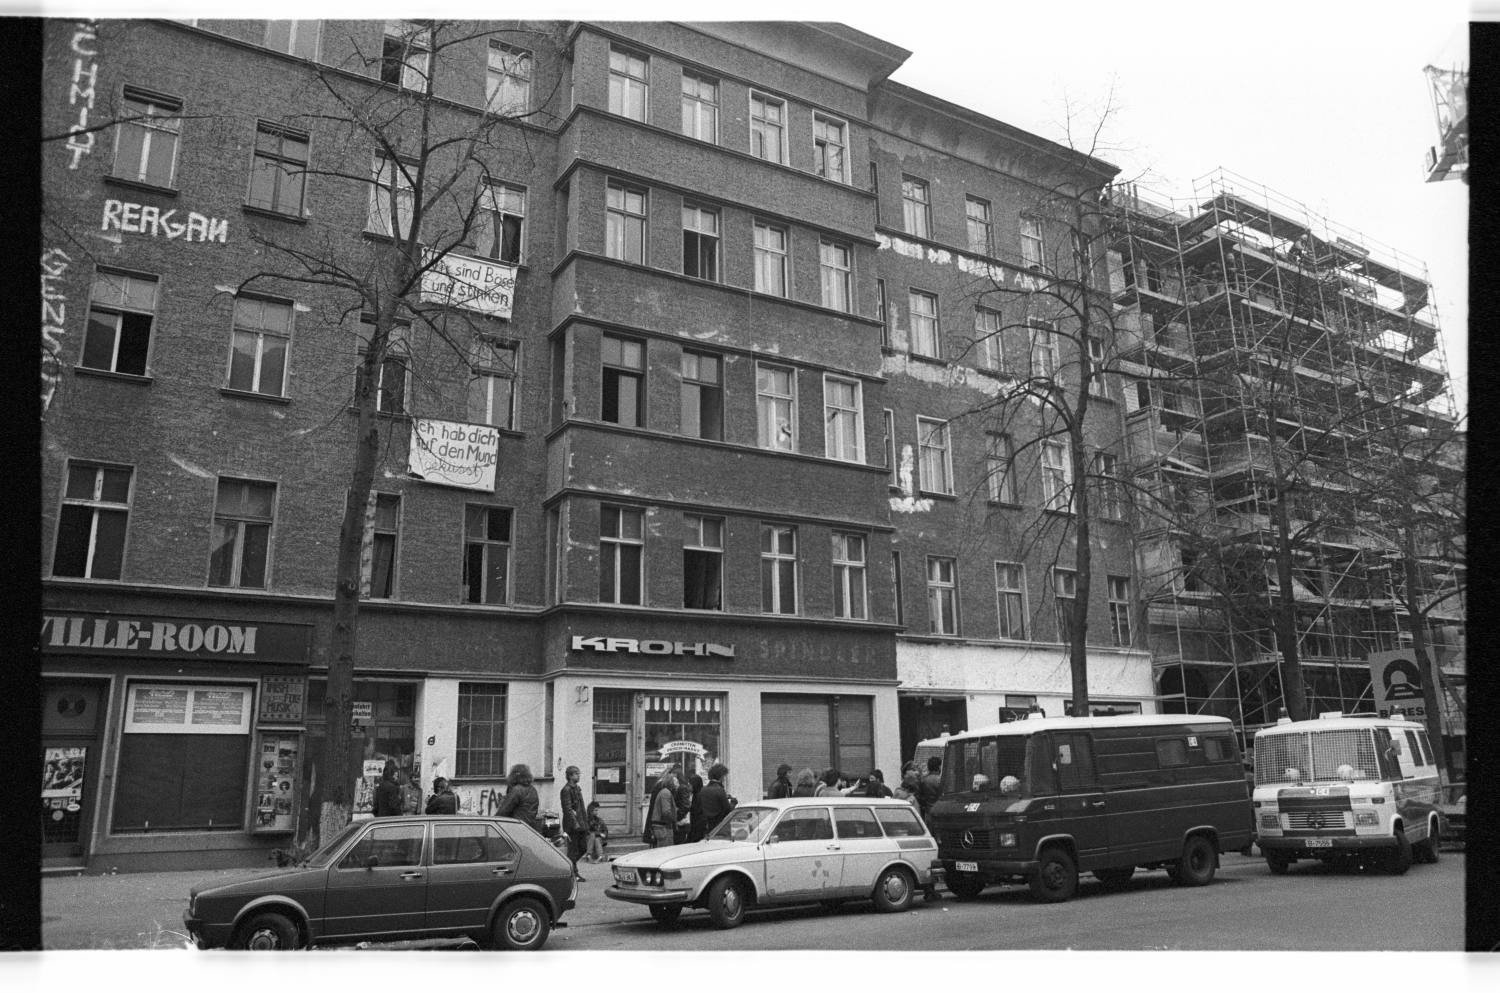 Kleinbildnegative: Besetzte Häuser, Maaßenstr. 11 und 13, 1982 (Museen Tempelhof-Schöneberg/Jürgen Henschel RR-F)